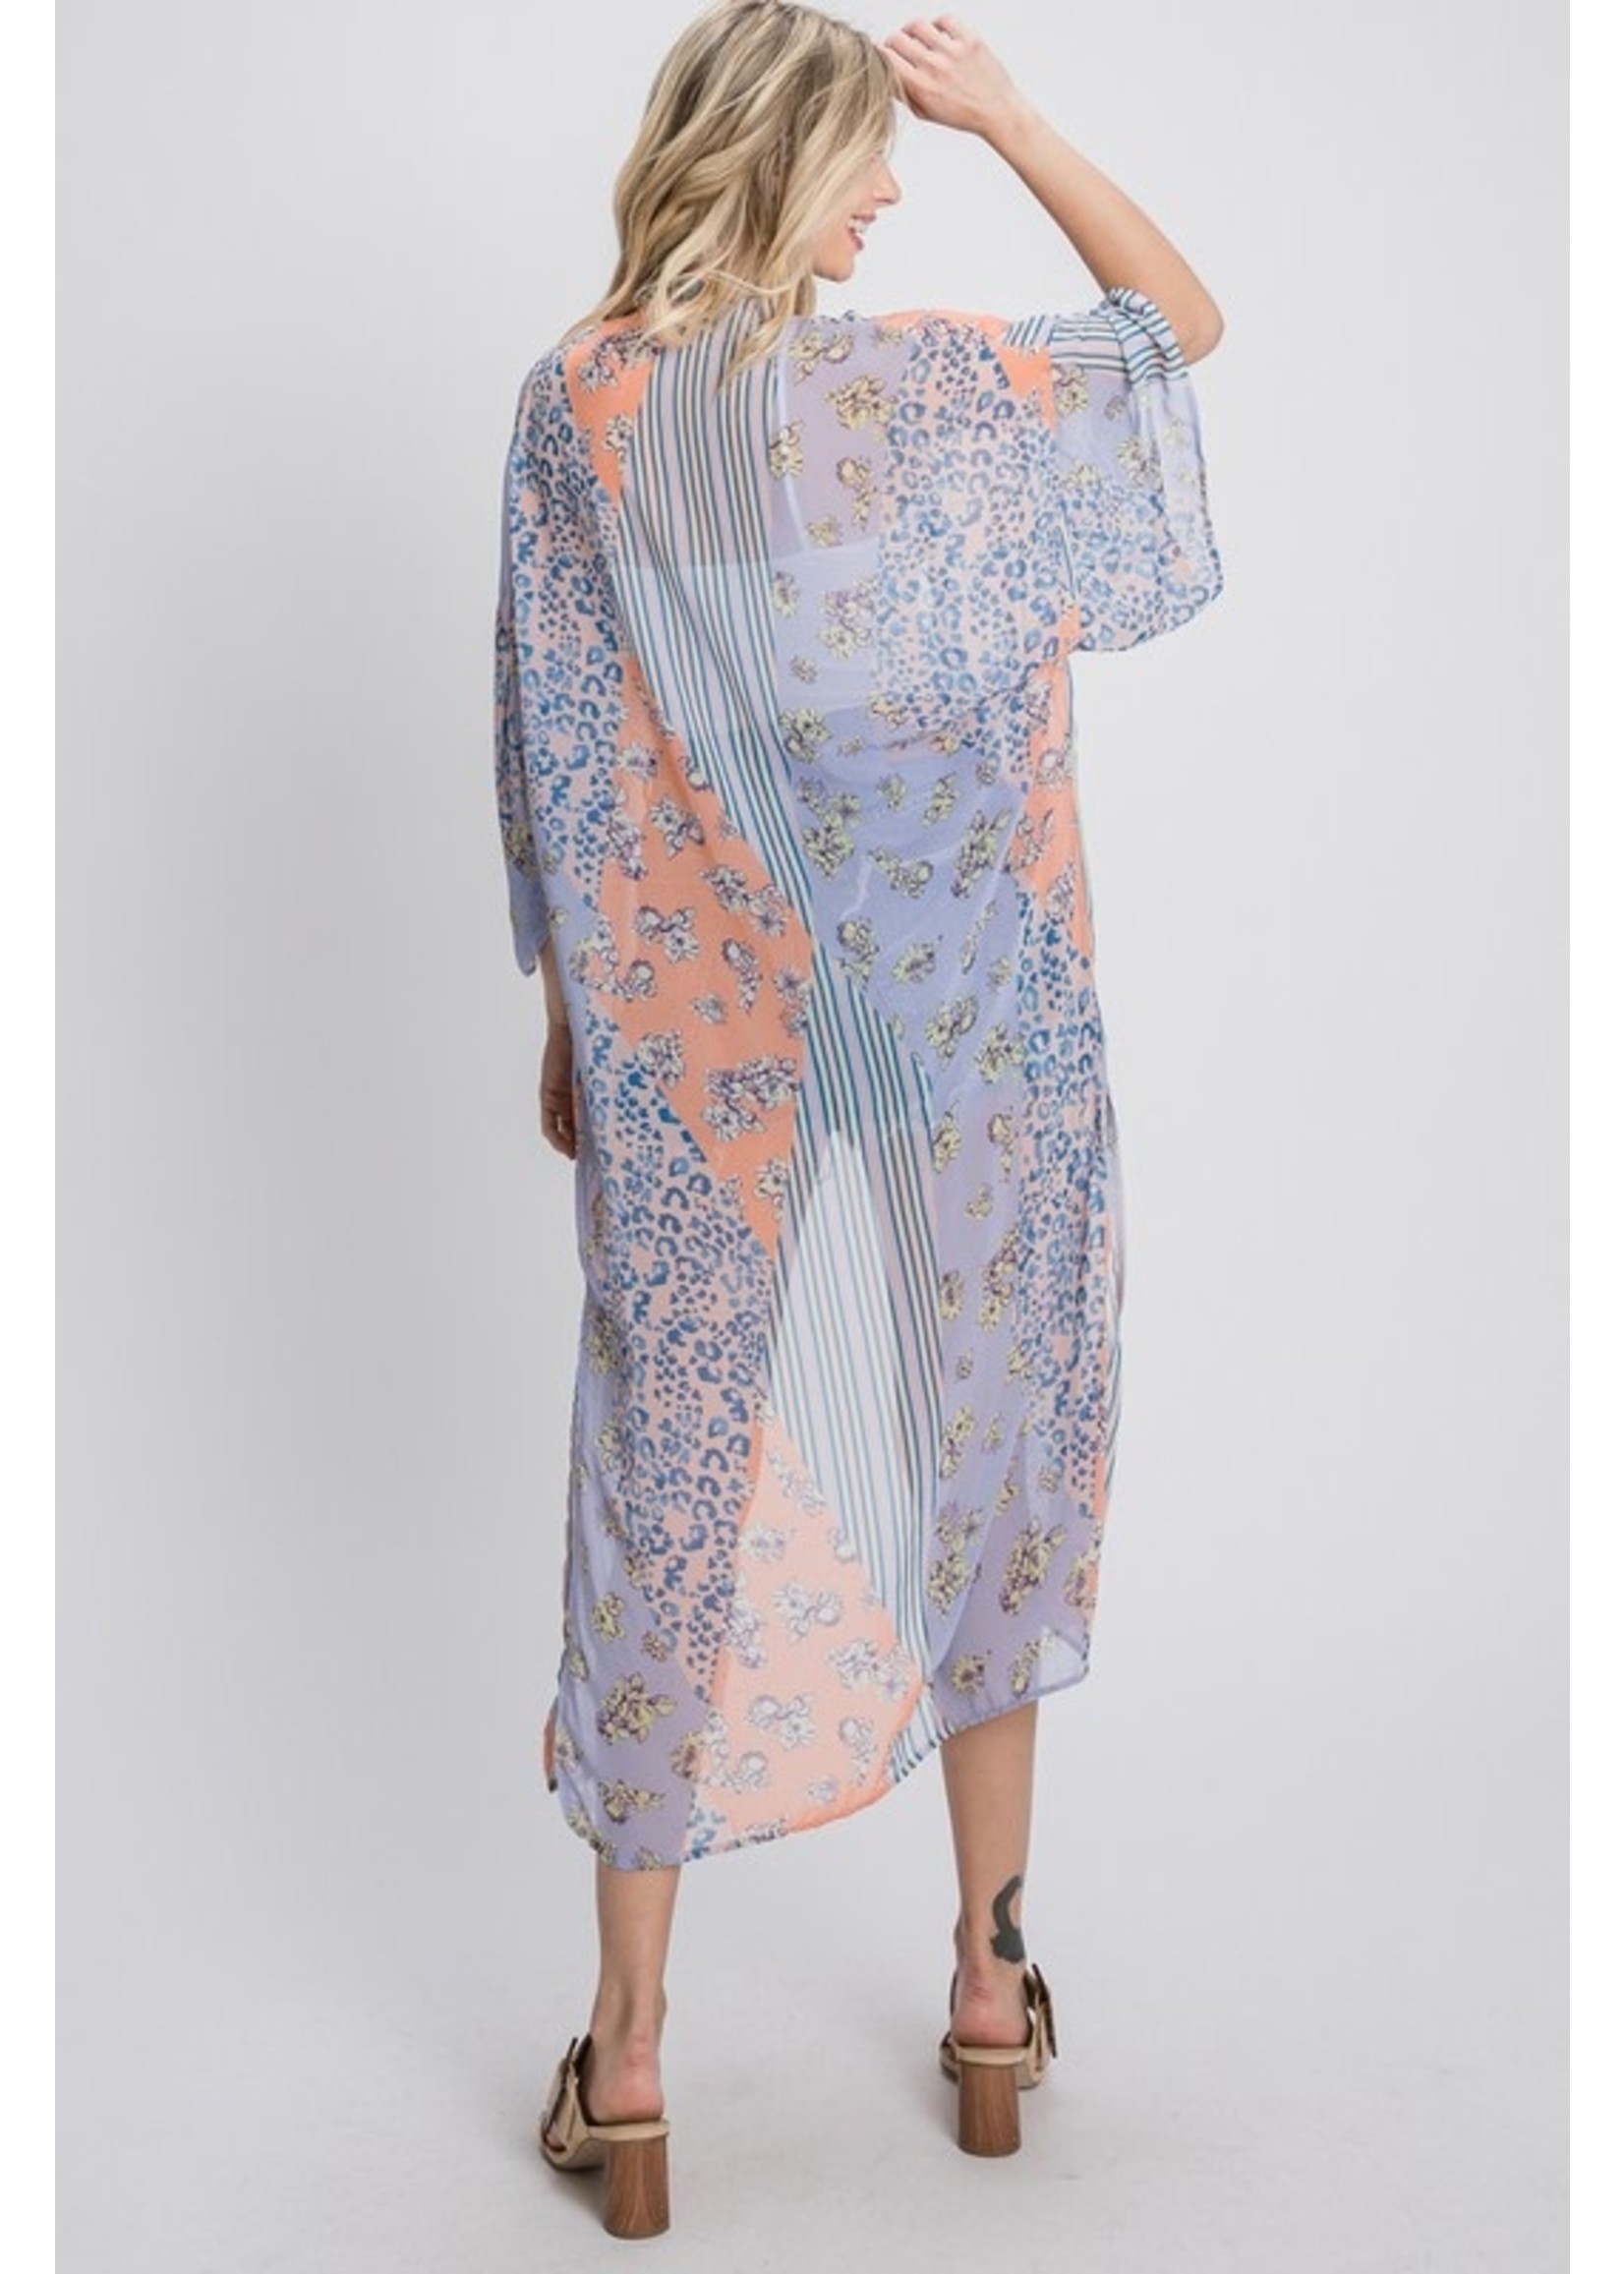 Plus Size Long Body Chiffon Kimono in 2 colors